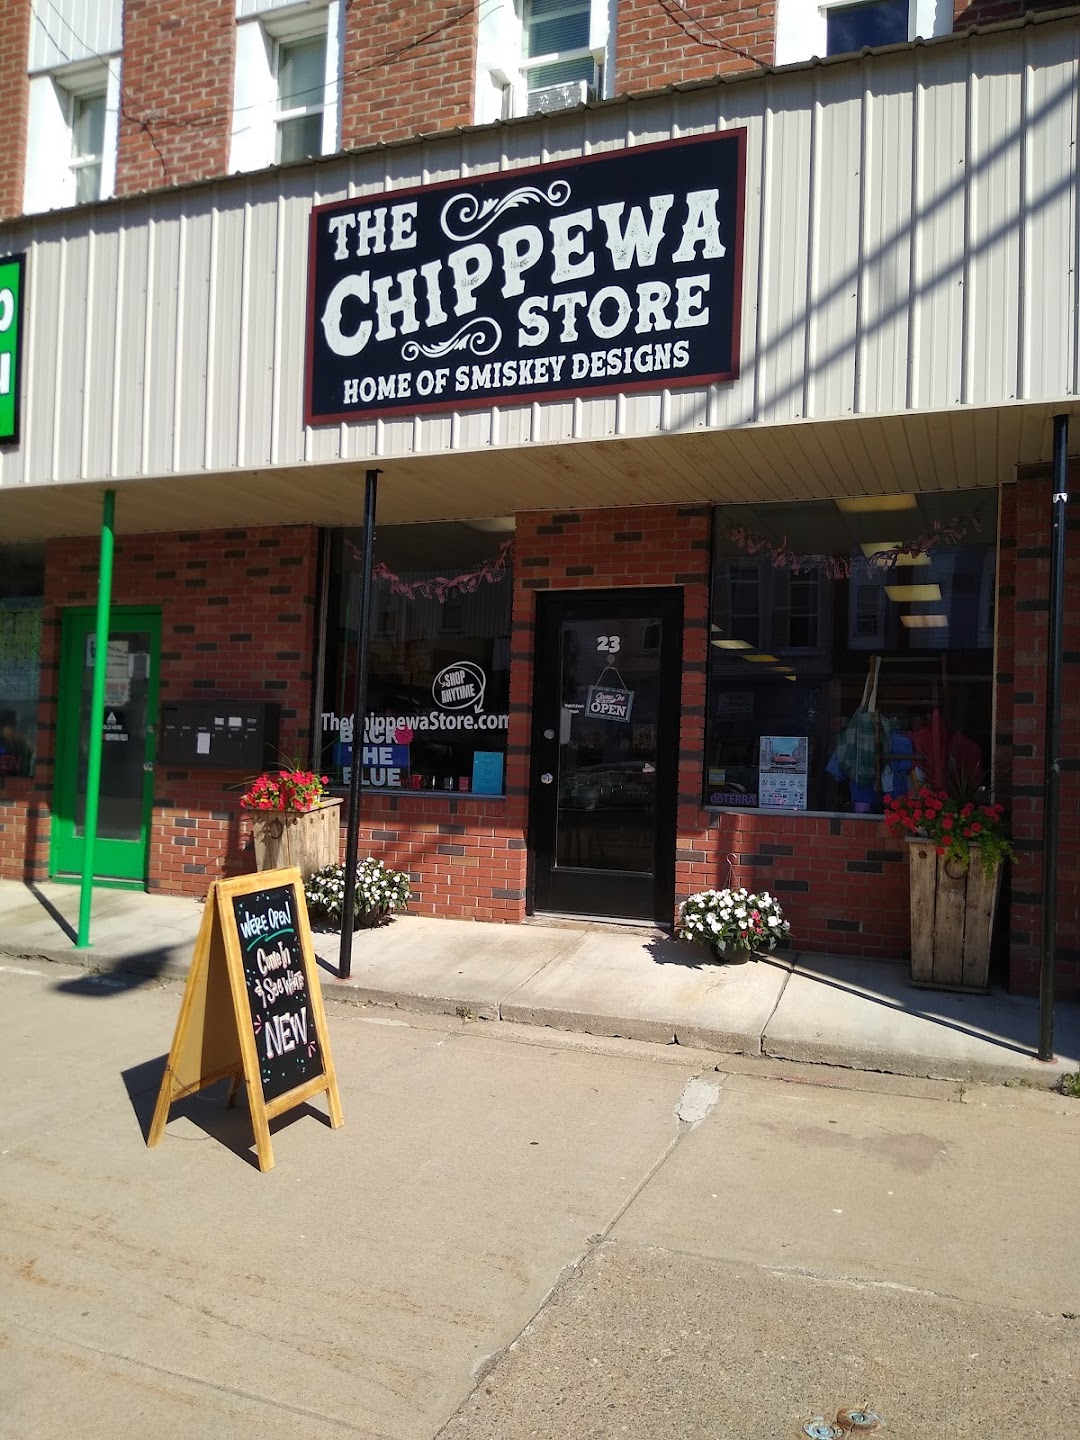 The Chippewa Store